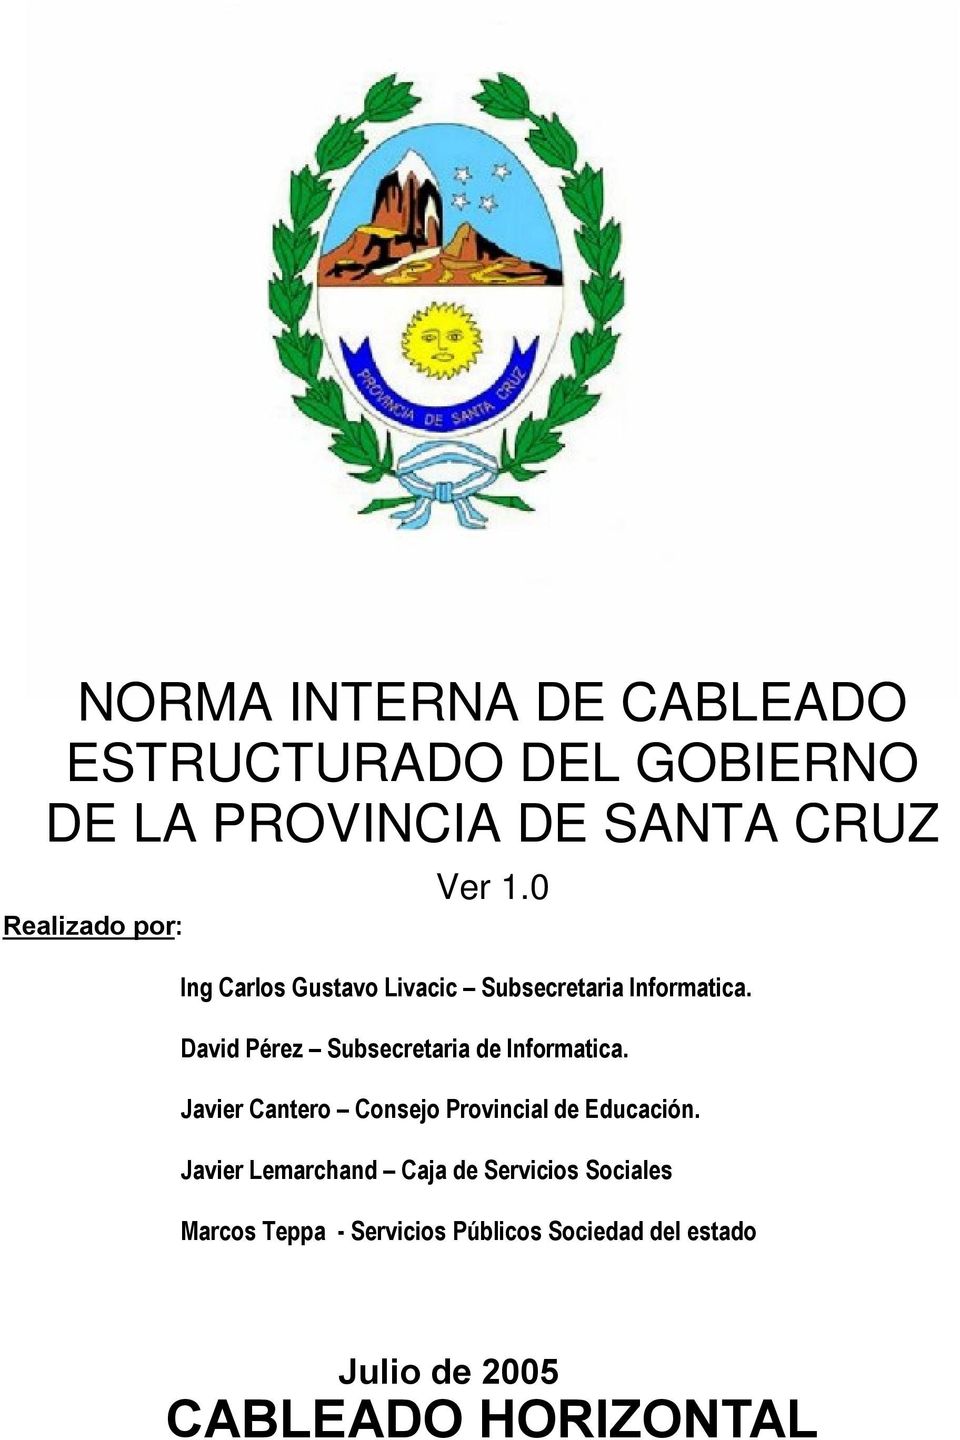 David Pérez Subsecretaria de Informatica. Javier Cantero Consejo Provincial de Educación.